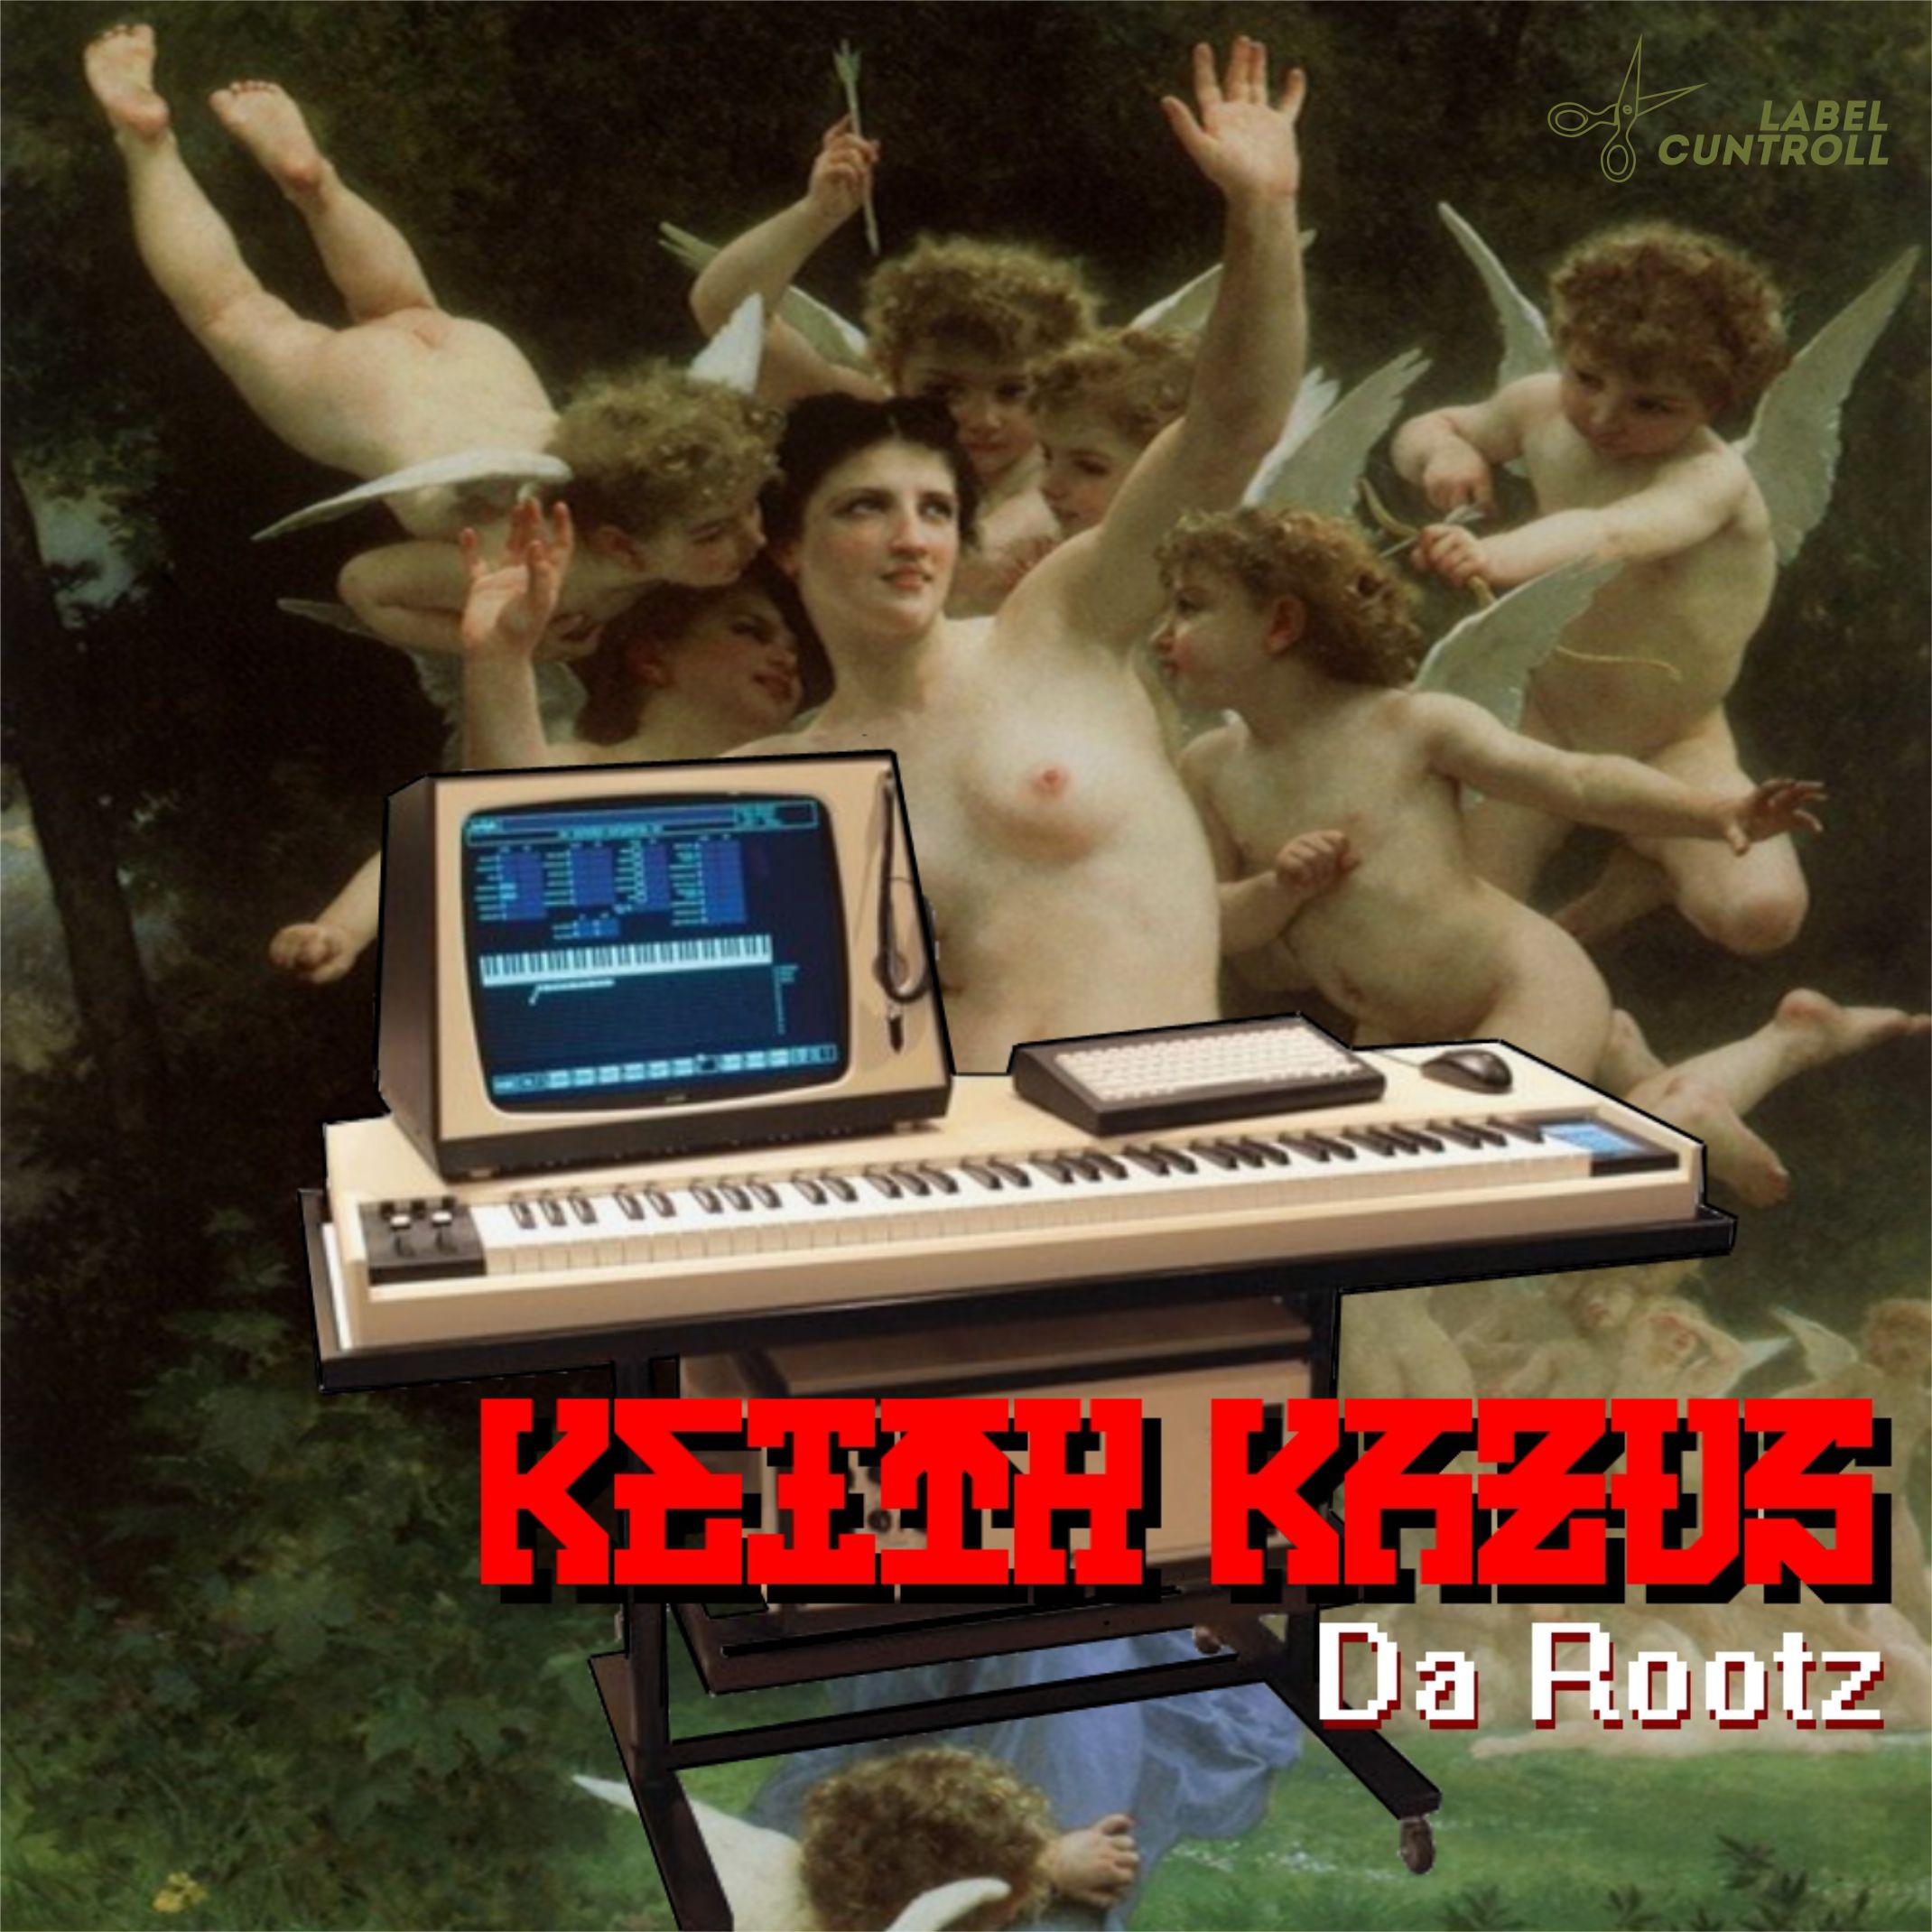 [CUNTROLL082] Keith Kazus - Da Rootzzz (2015)